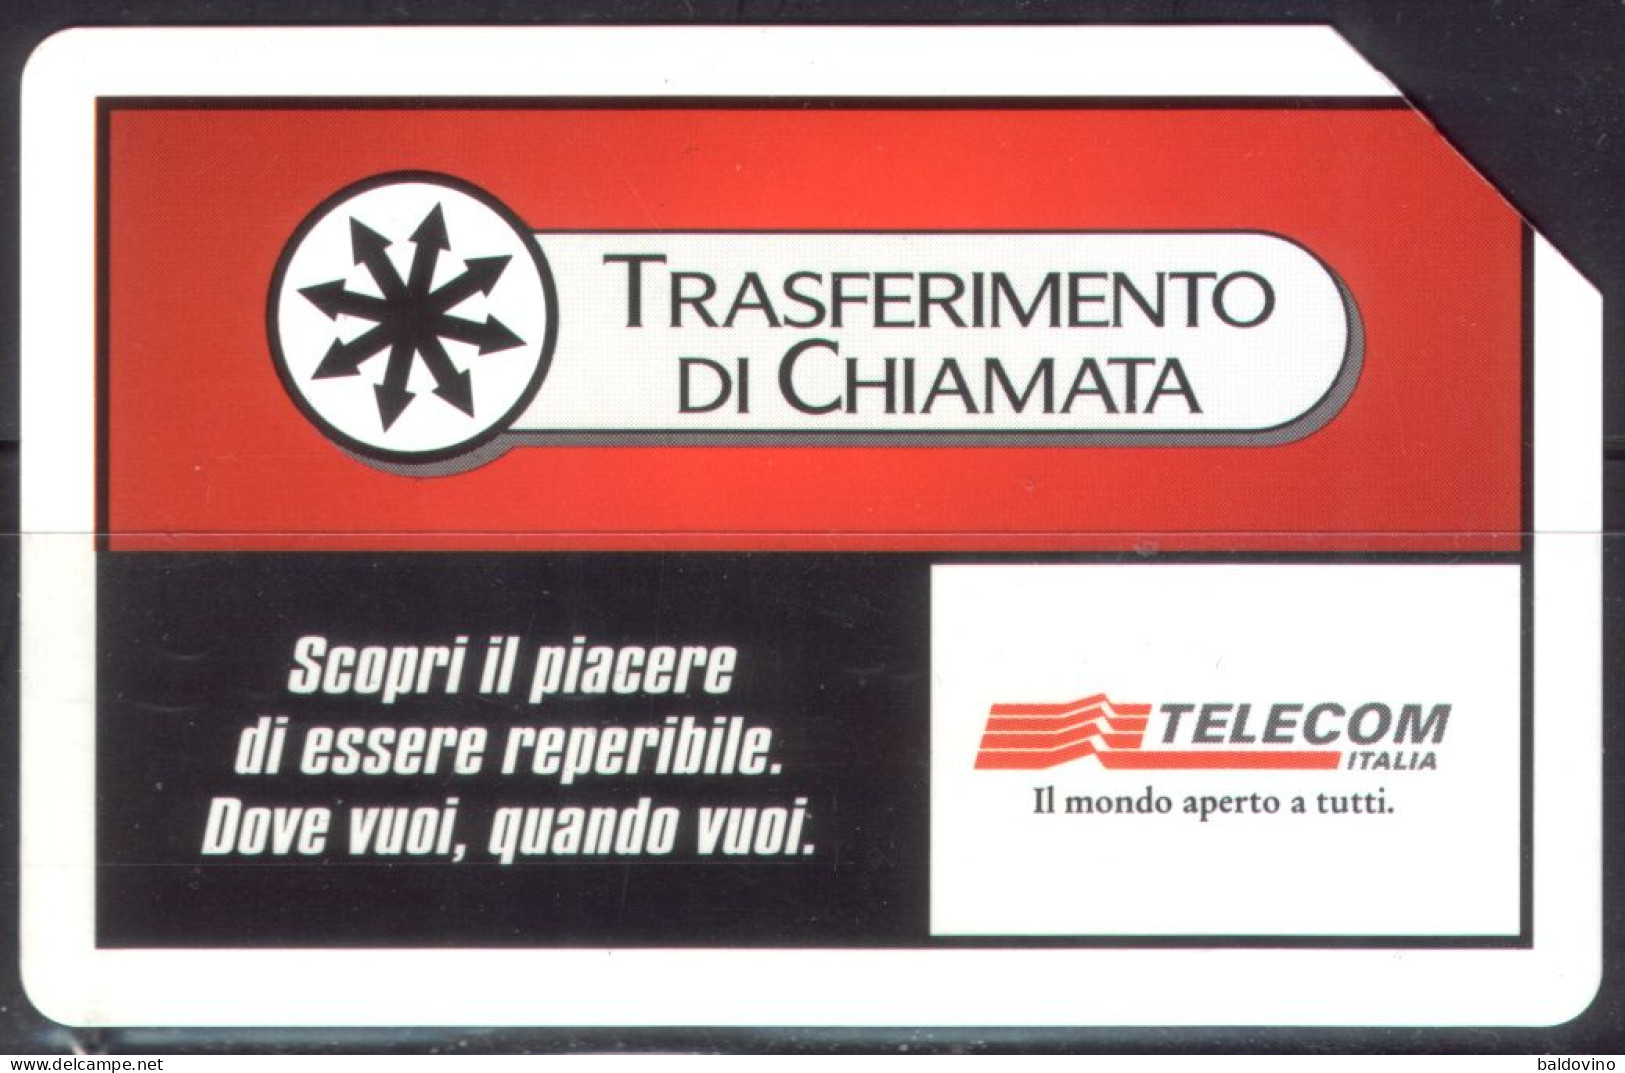 Telecom Italia 15 schede telefoniche